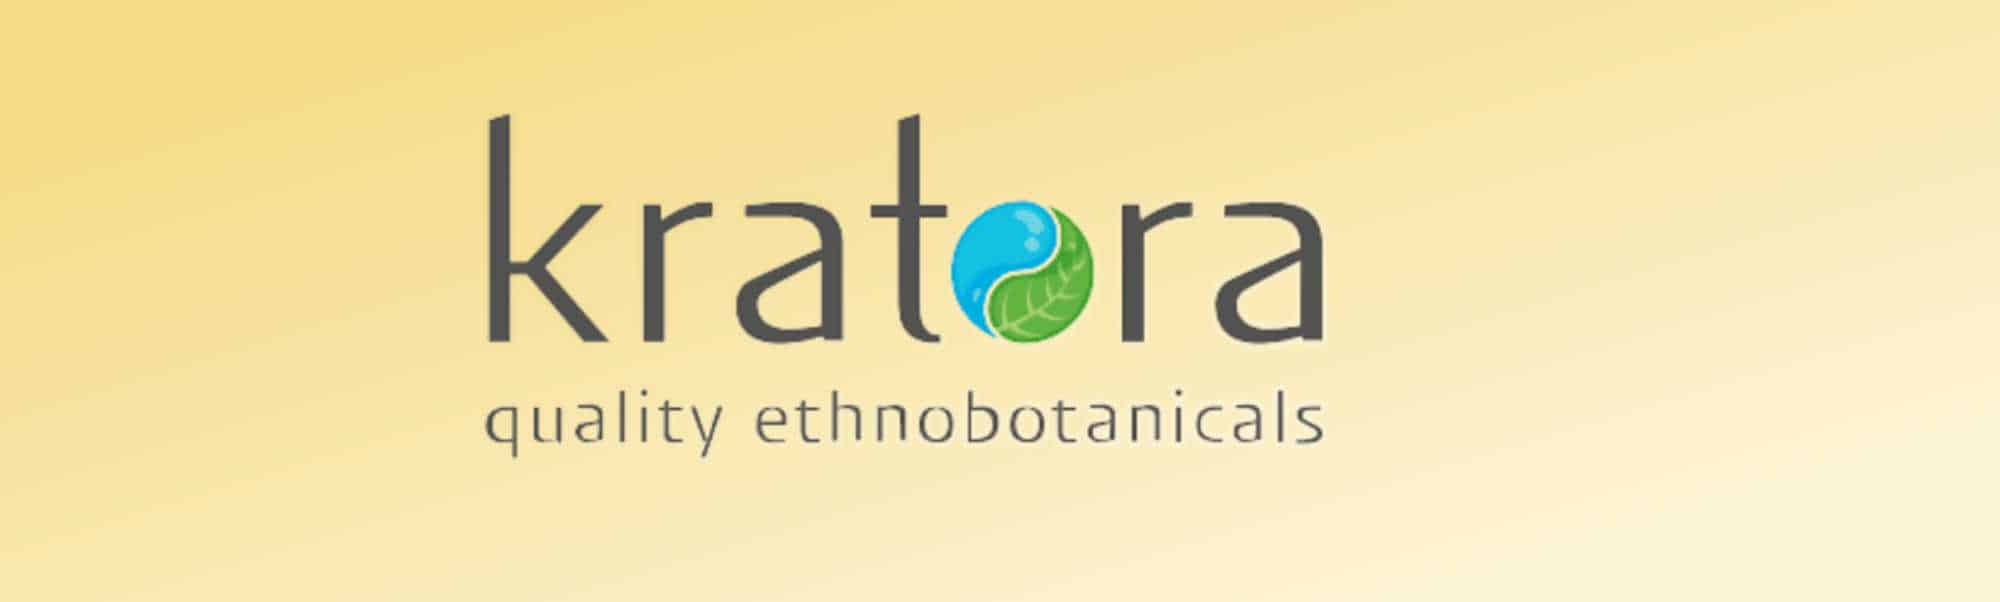 image of kratora logo